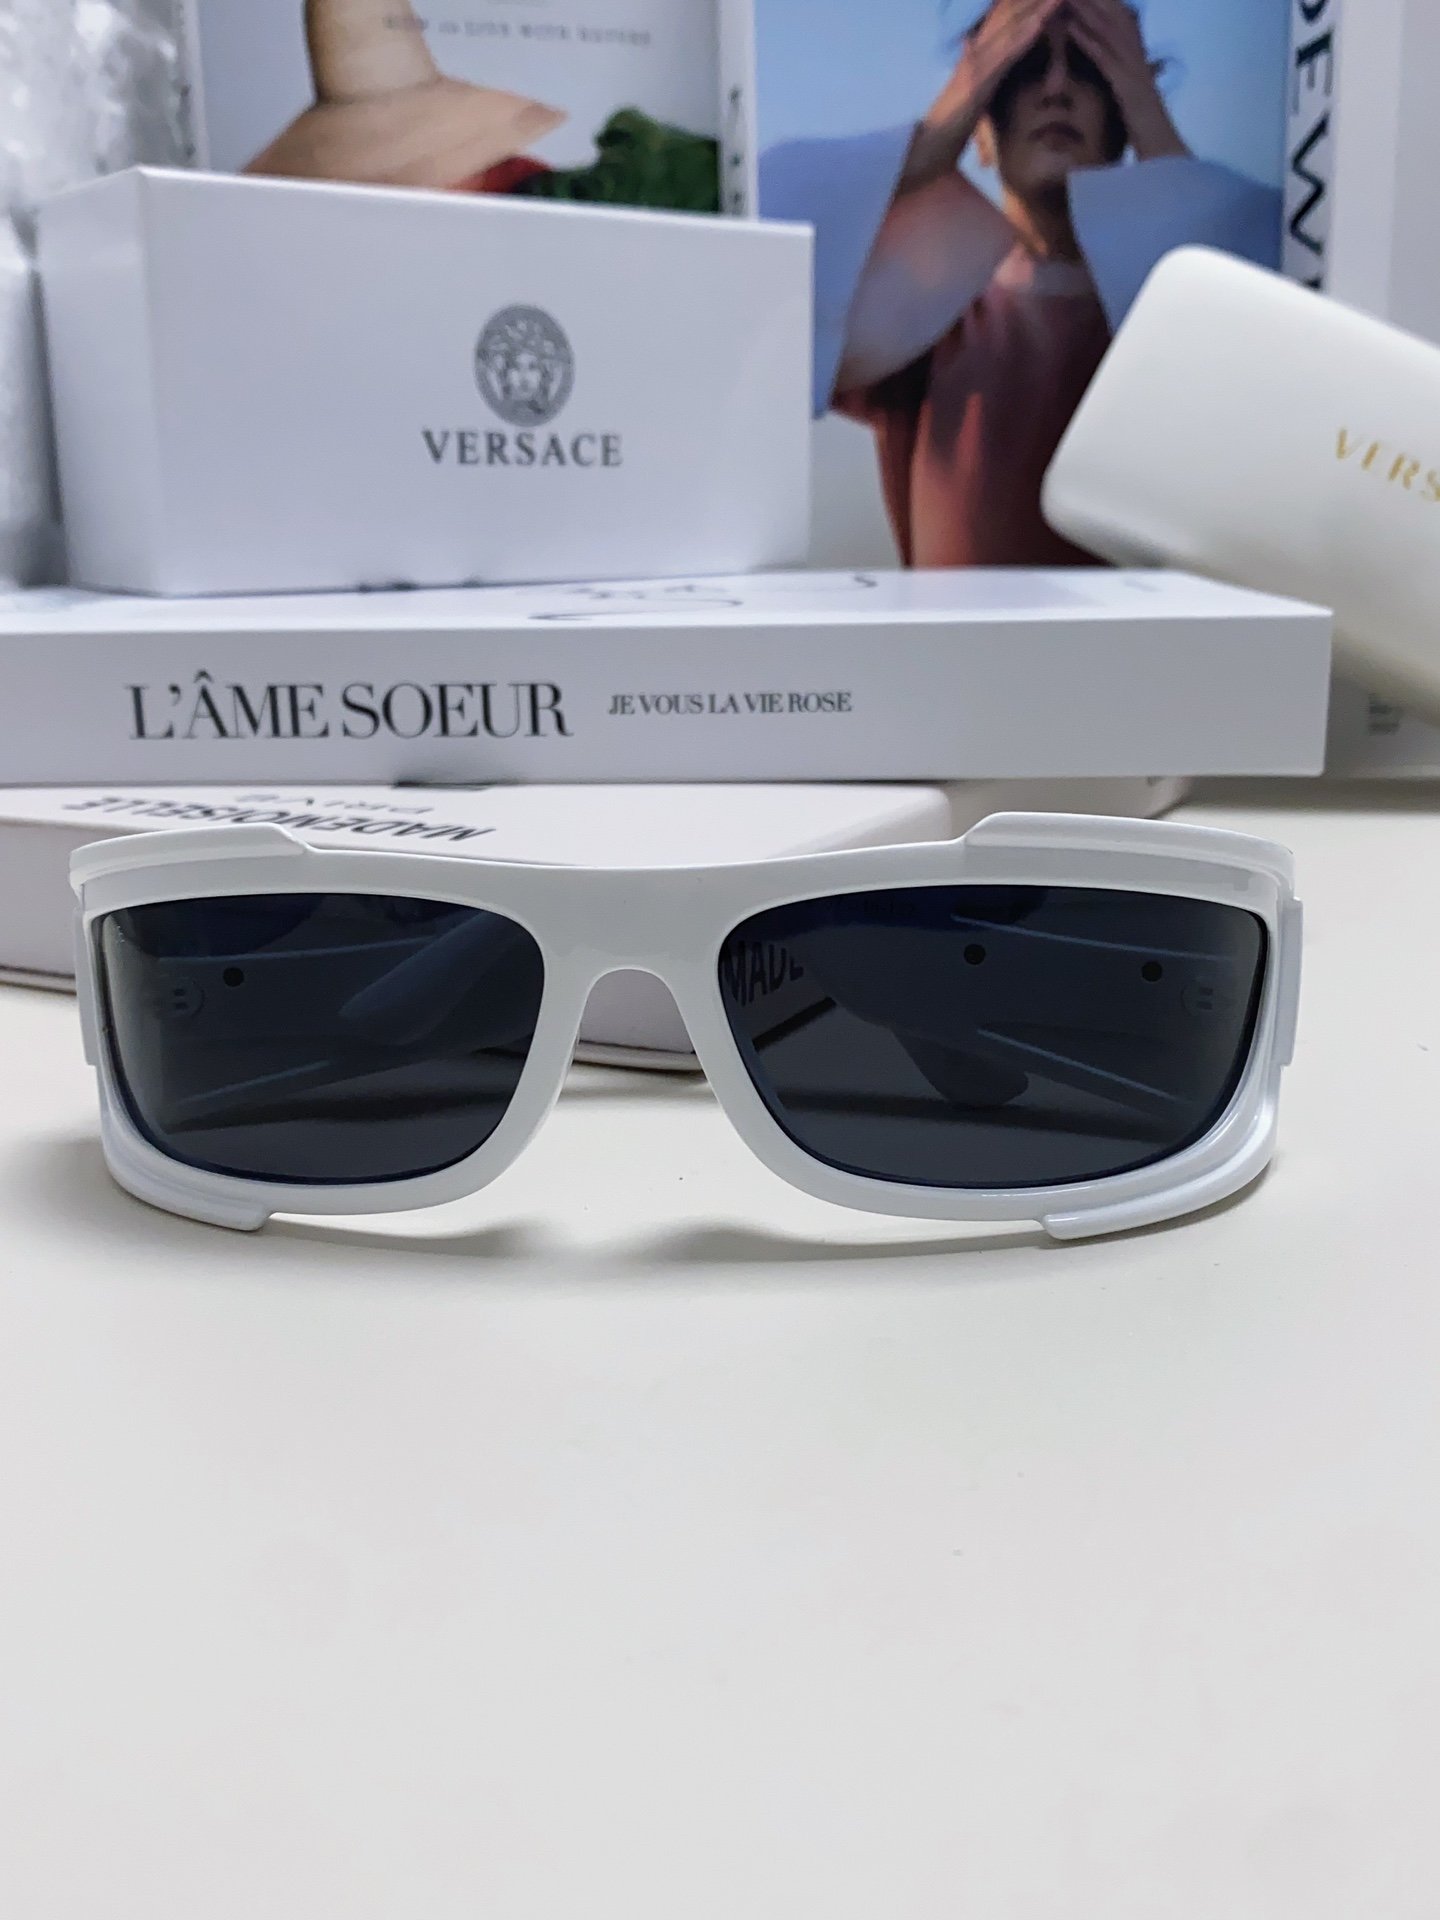 范思哲Versace欧美专柜流行时尚男士飞行员式全框墨镜